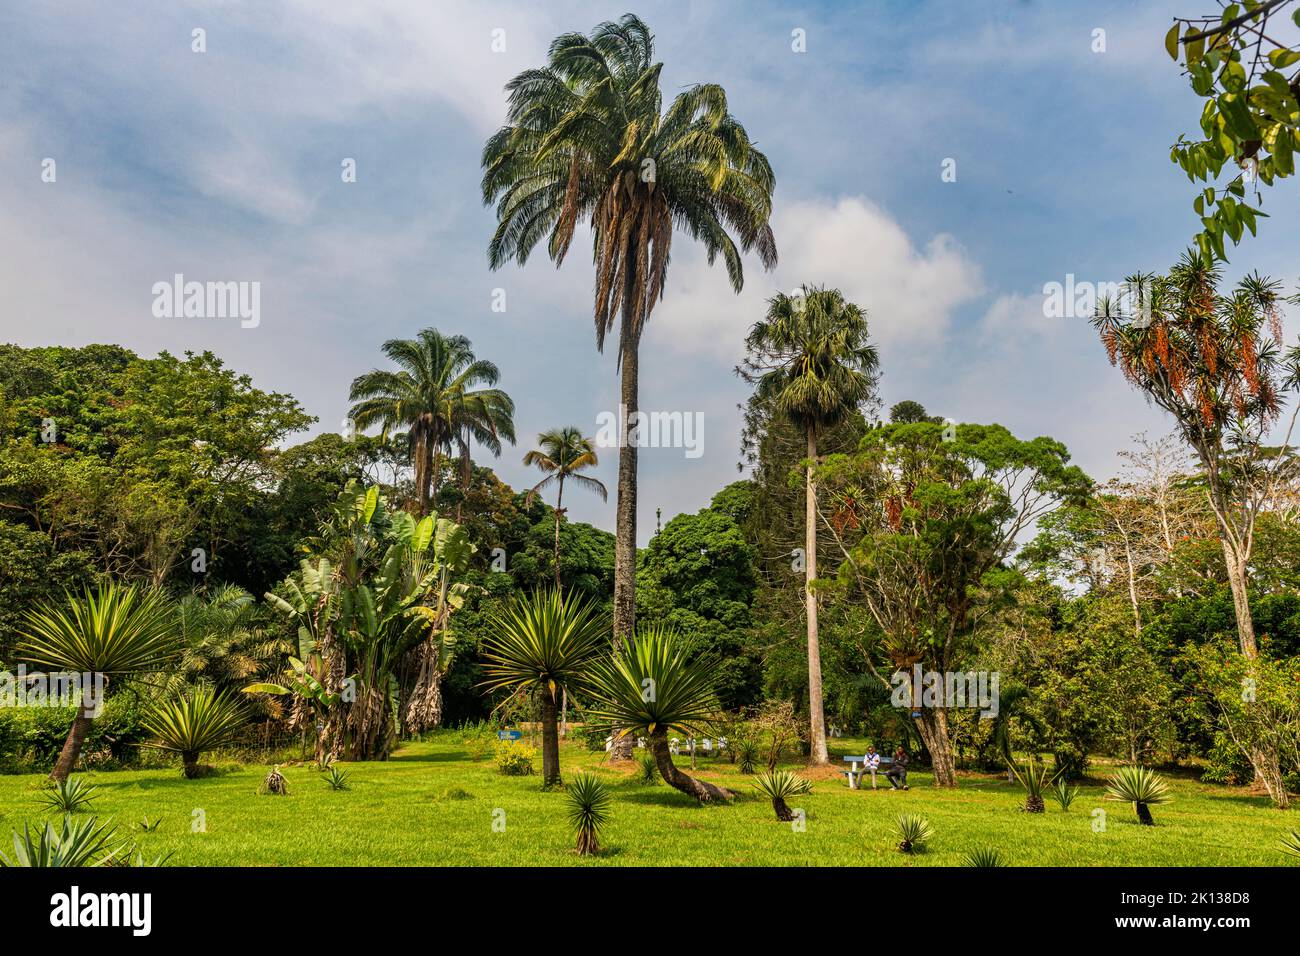 Jardines botánicos de Kisantu, Kisantu, República Democrática del Congo, África Foto de stock